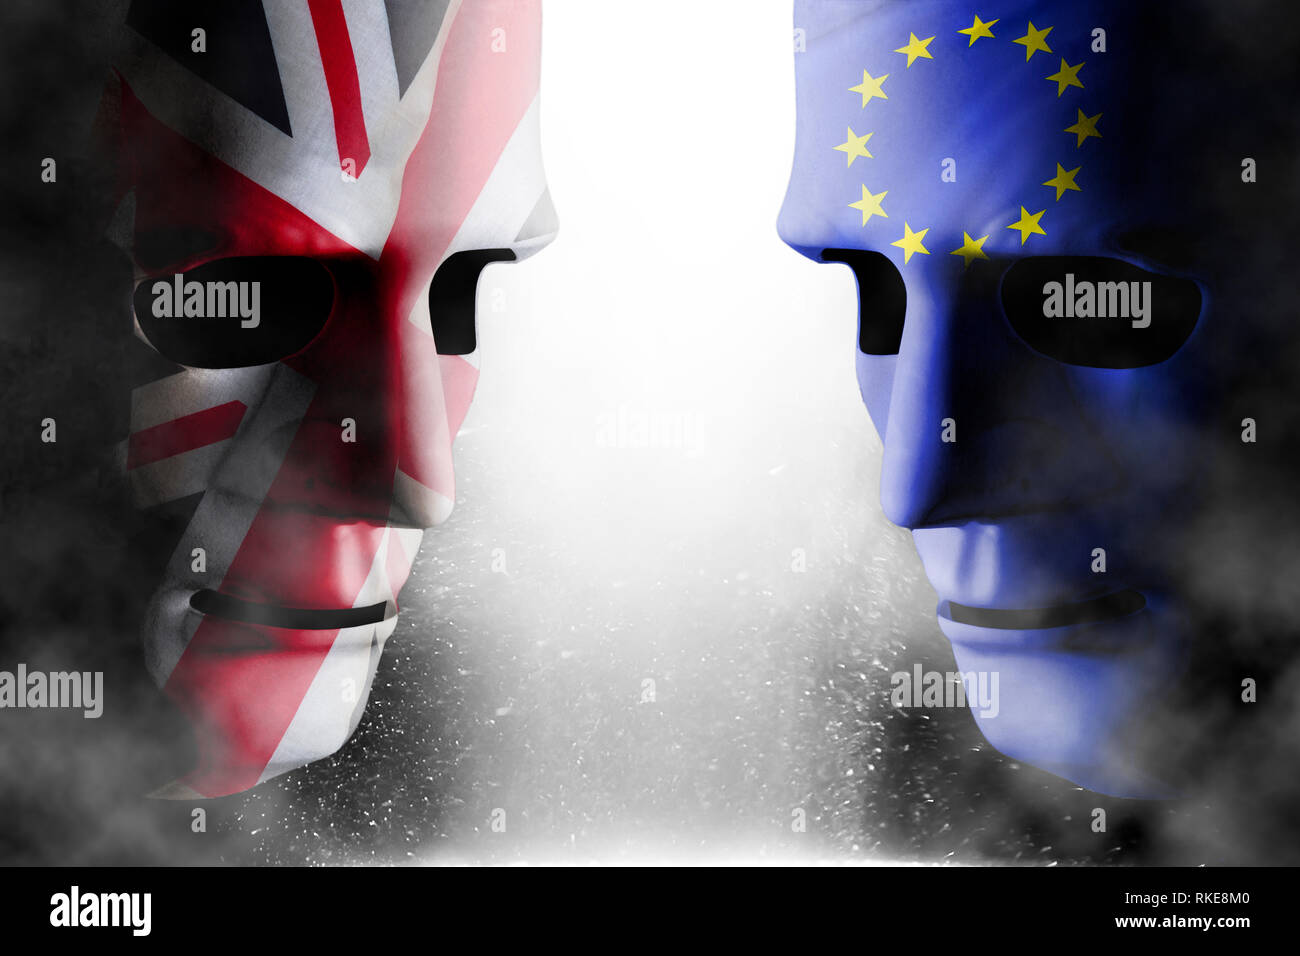 Brexit Konzept mit zwei Kopf an Kopf menschliche Gesichter mit UK (Vereinigtes Königreich) und der EU (Europäische Union) Flagge. Dampf und Rauch umgibt die Sym Stockfoto